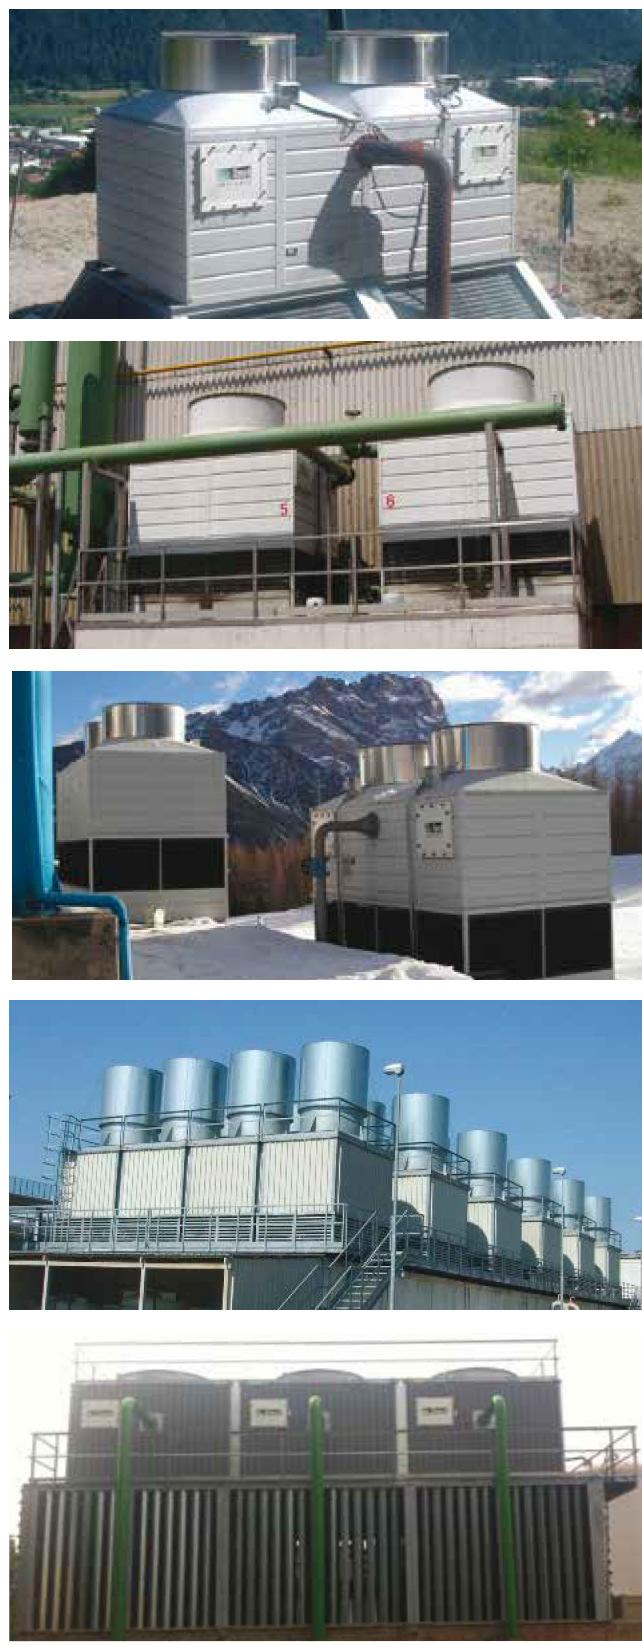 CHARAKTERYSTYKA Wieże chłodnicze TT zaprojektowane są dla małych i średnich instalacji chłodniczych. Produkowane są fabrycznie i dostarczane na miejsce instalacji wstępnie zmontowane.